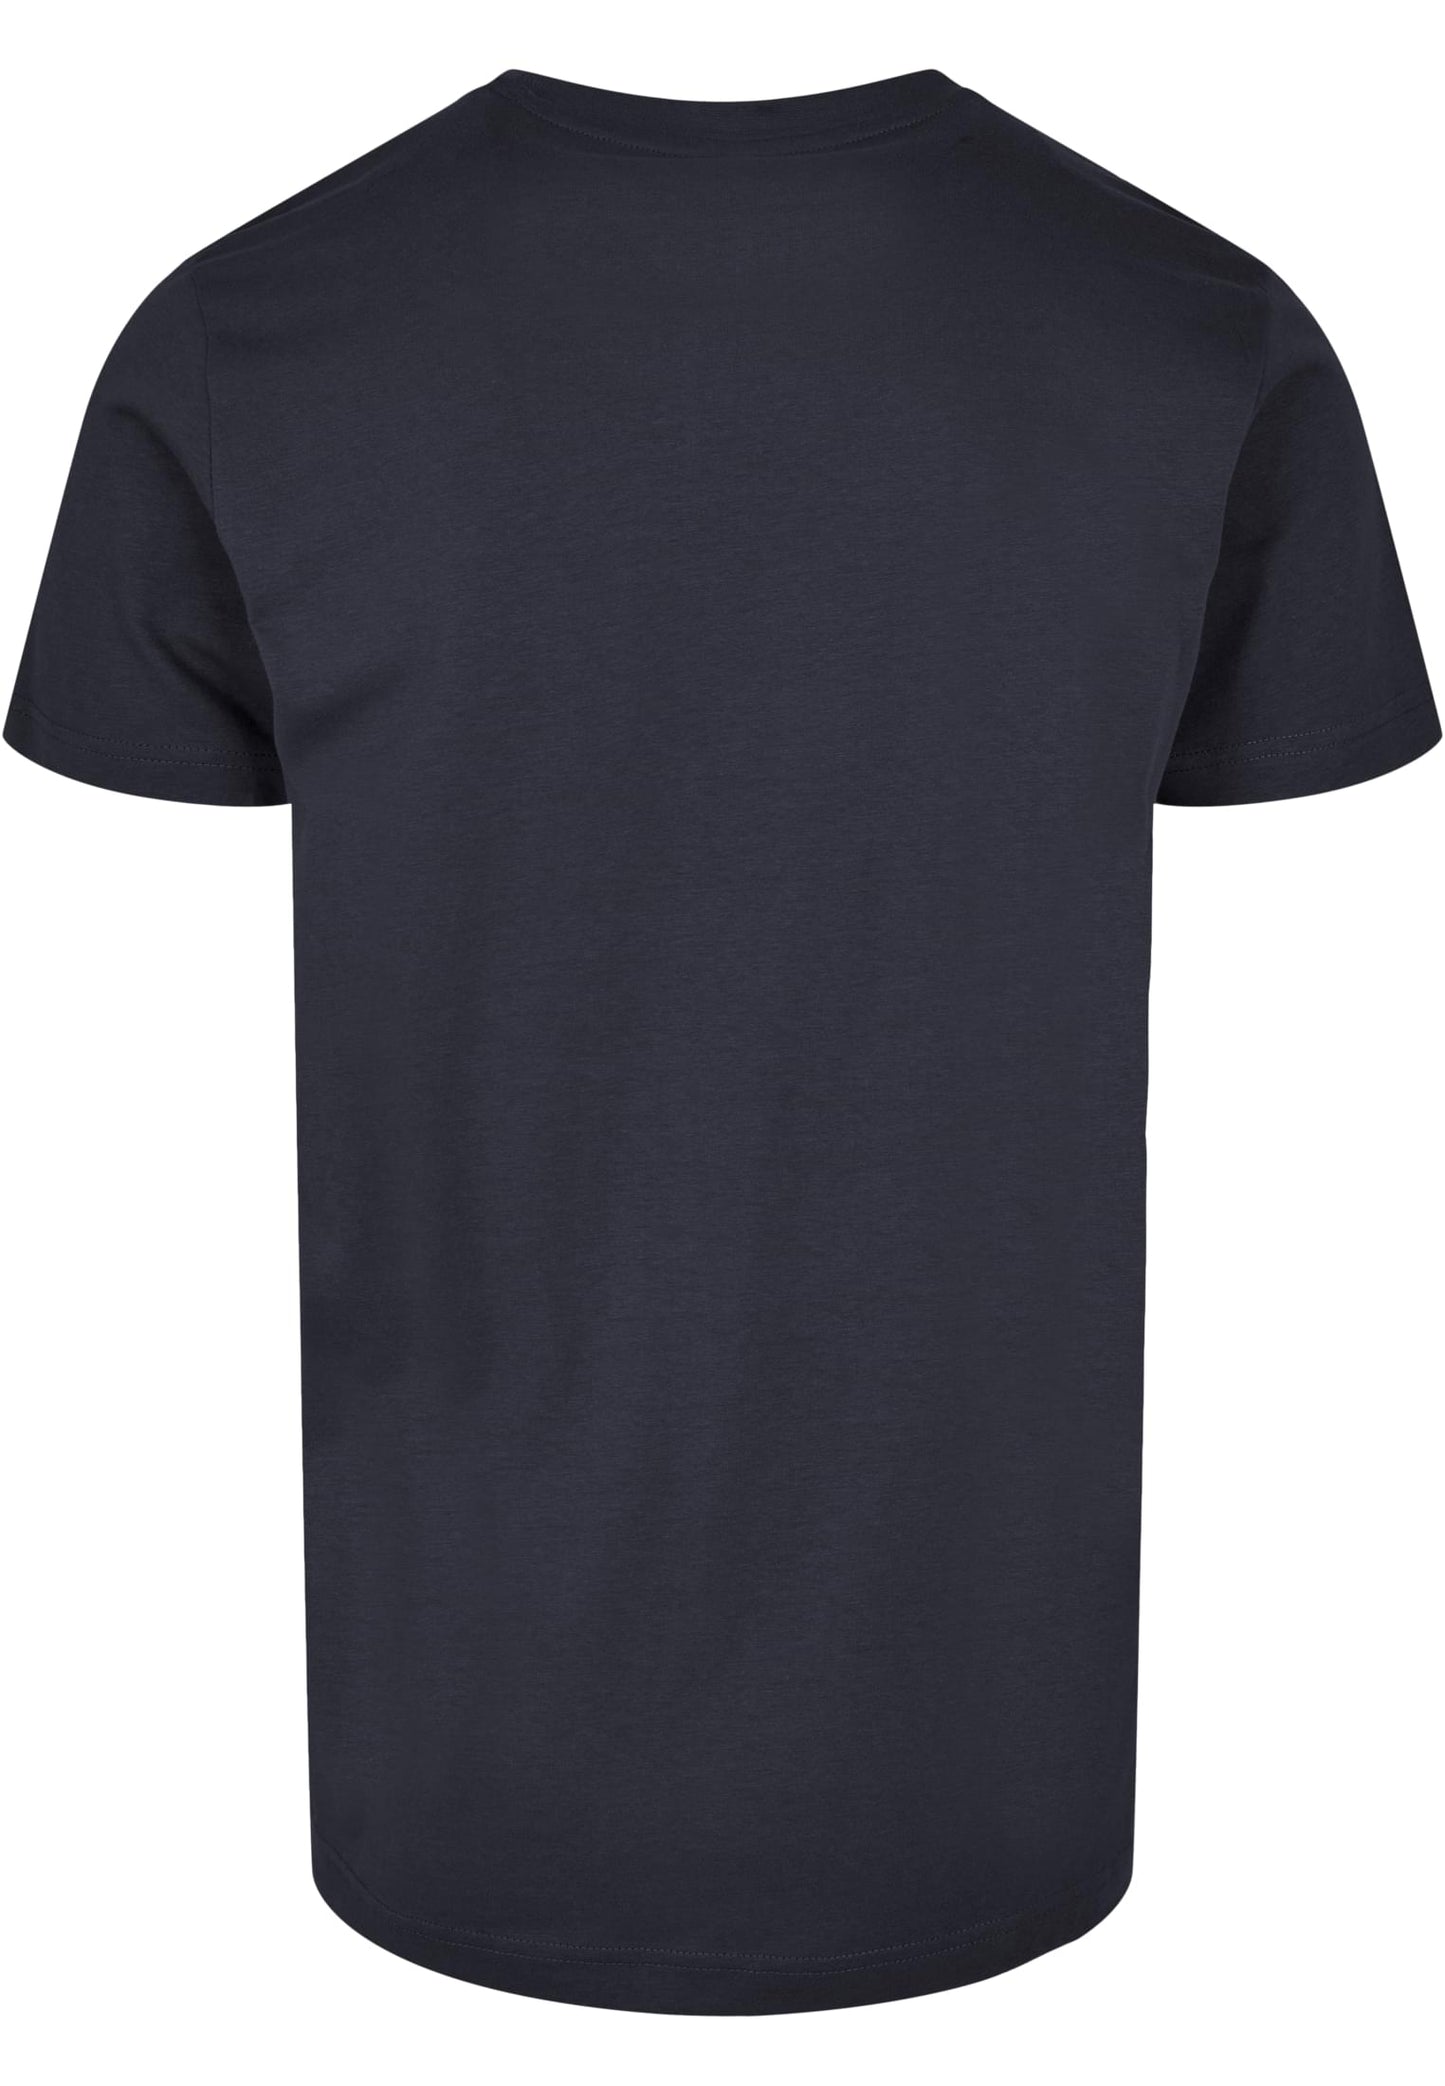 Basic Round Neck T-Shirt